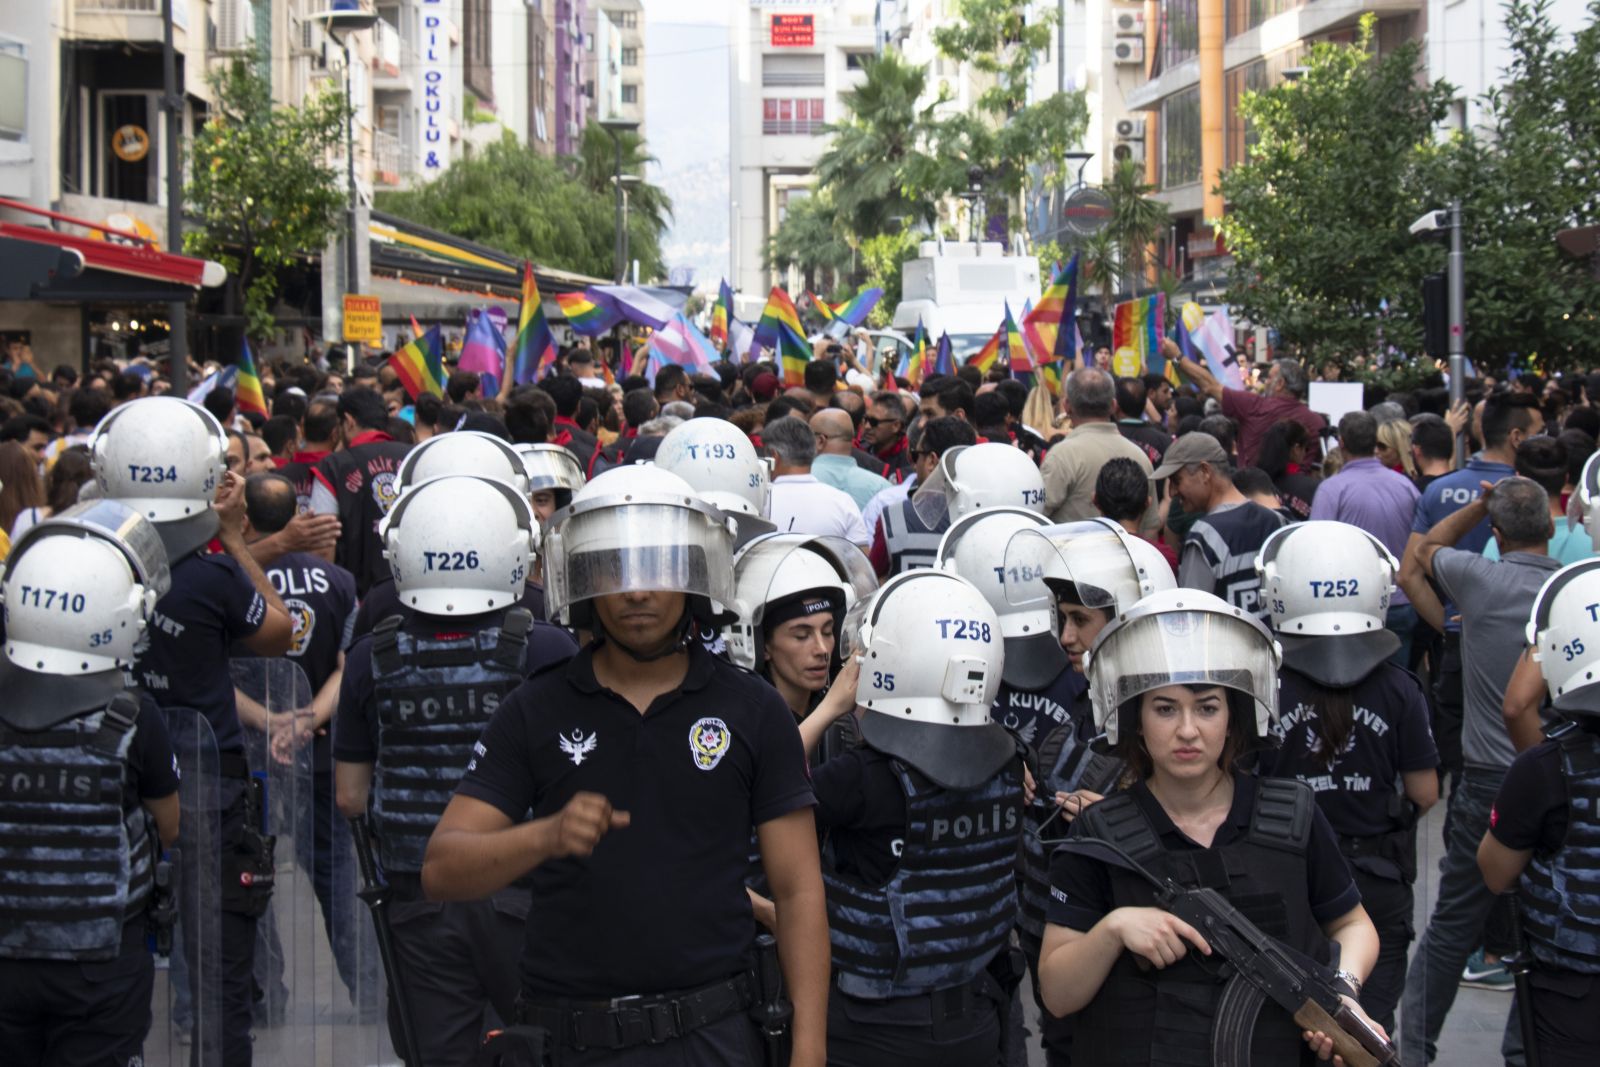 Polisten saldırıya uğrayan trans kadınlara: “Seni korumak zorunda değilim!” Kaos GL - LGBTİ+ Haber Portalı